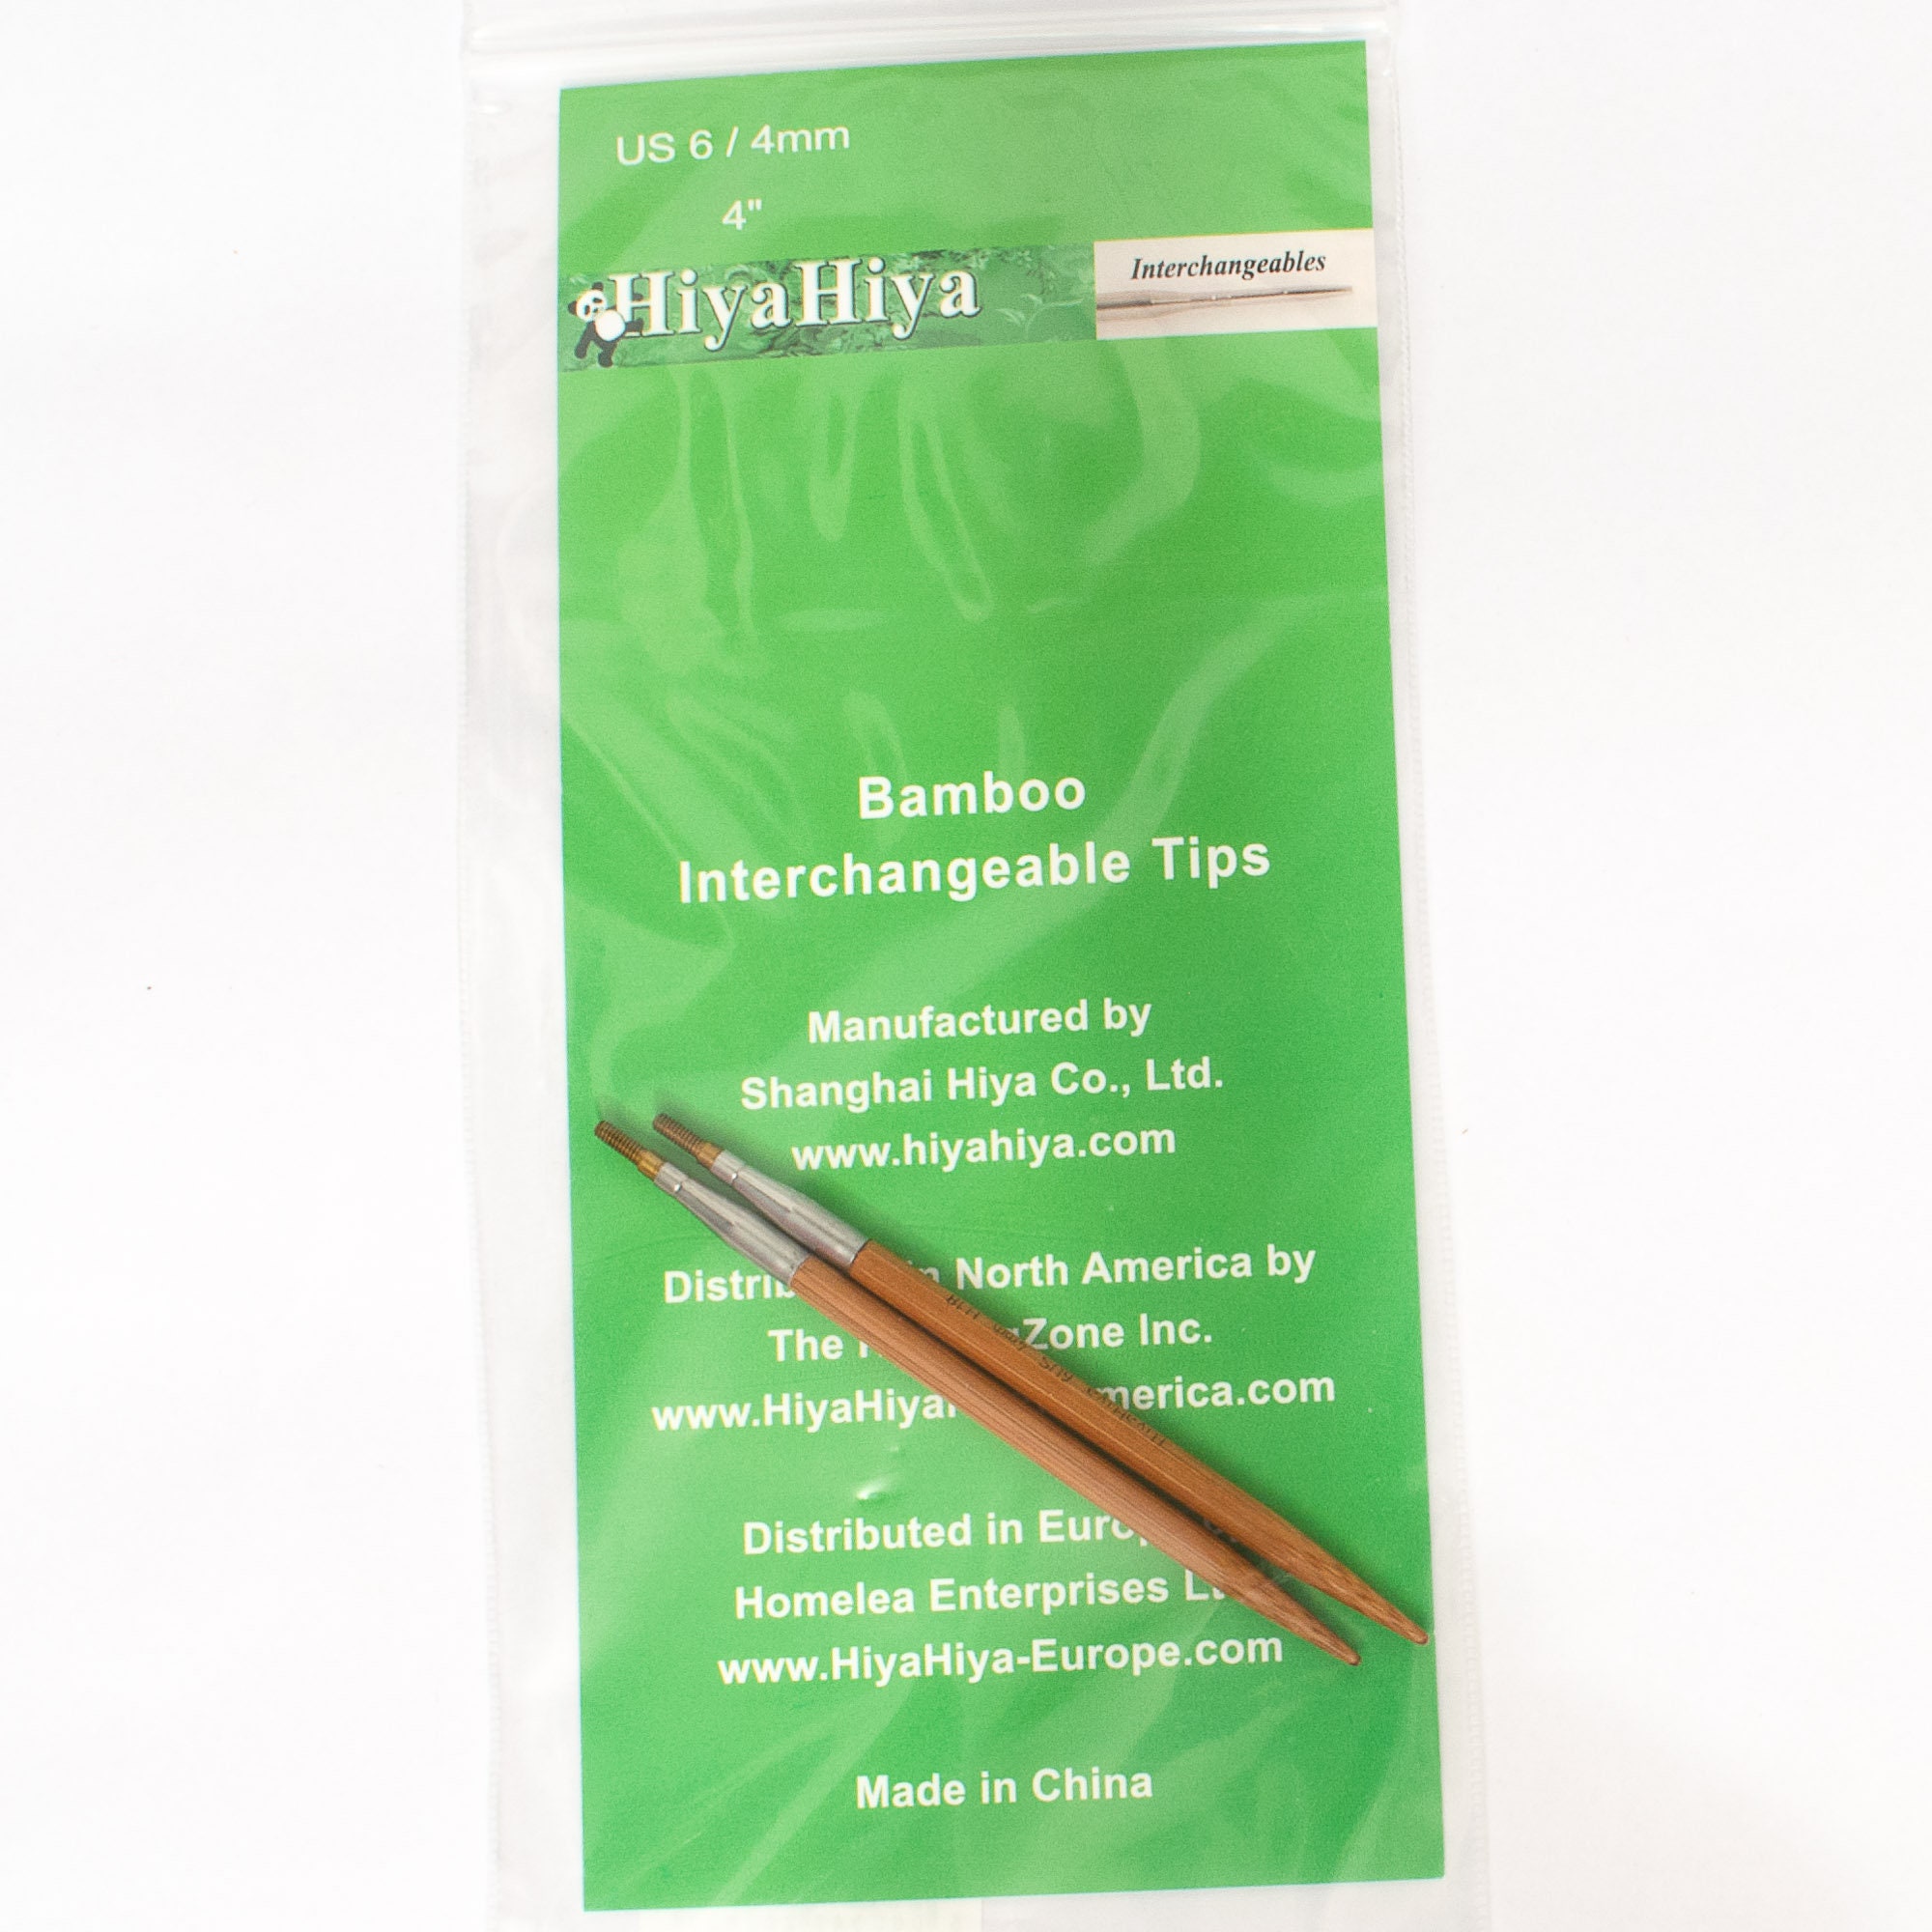 Hiyahiya Bamboo Interchangeable Knitting Needle Tips 